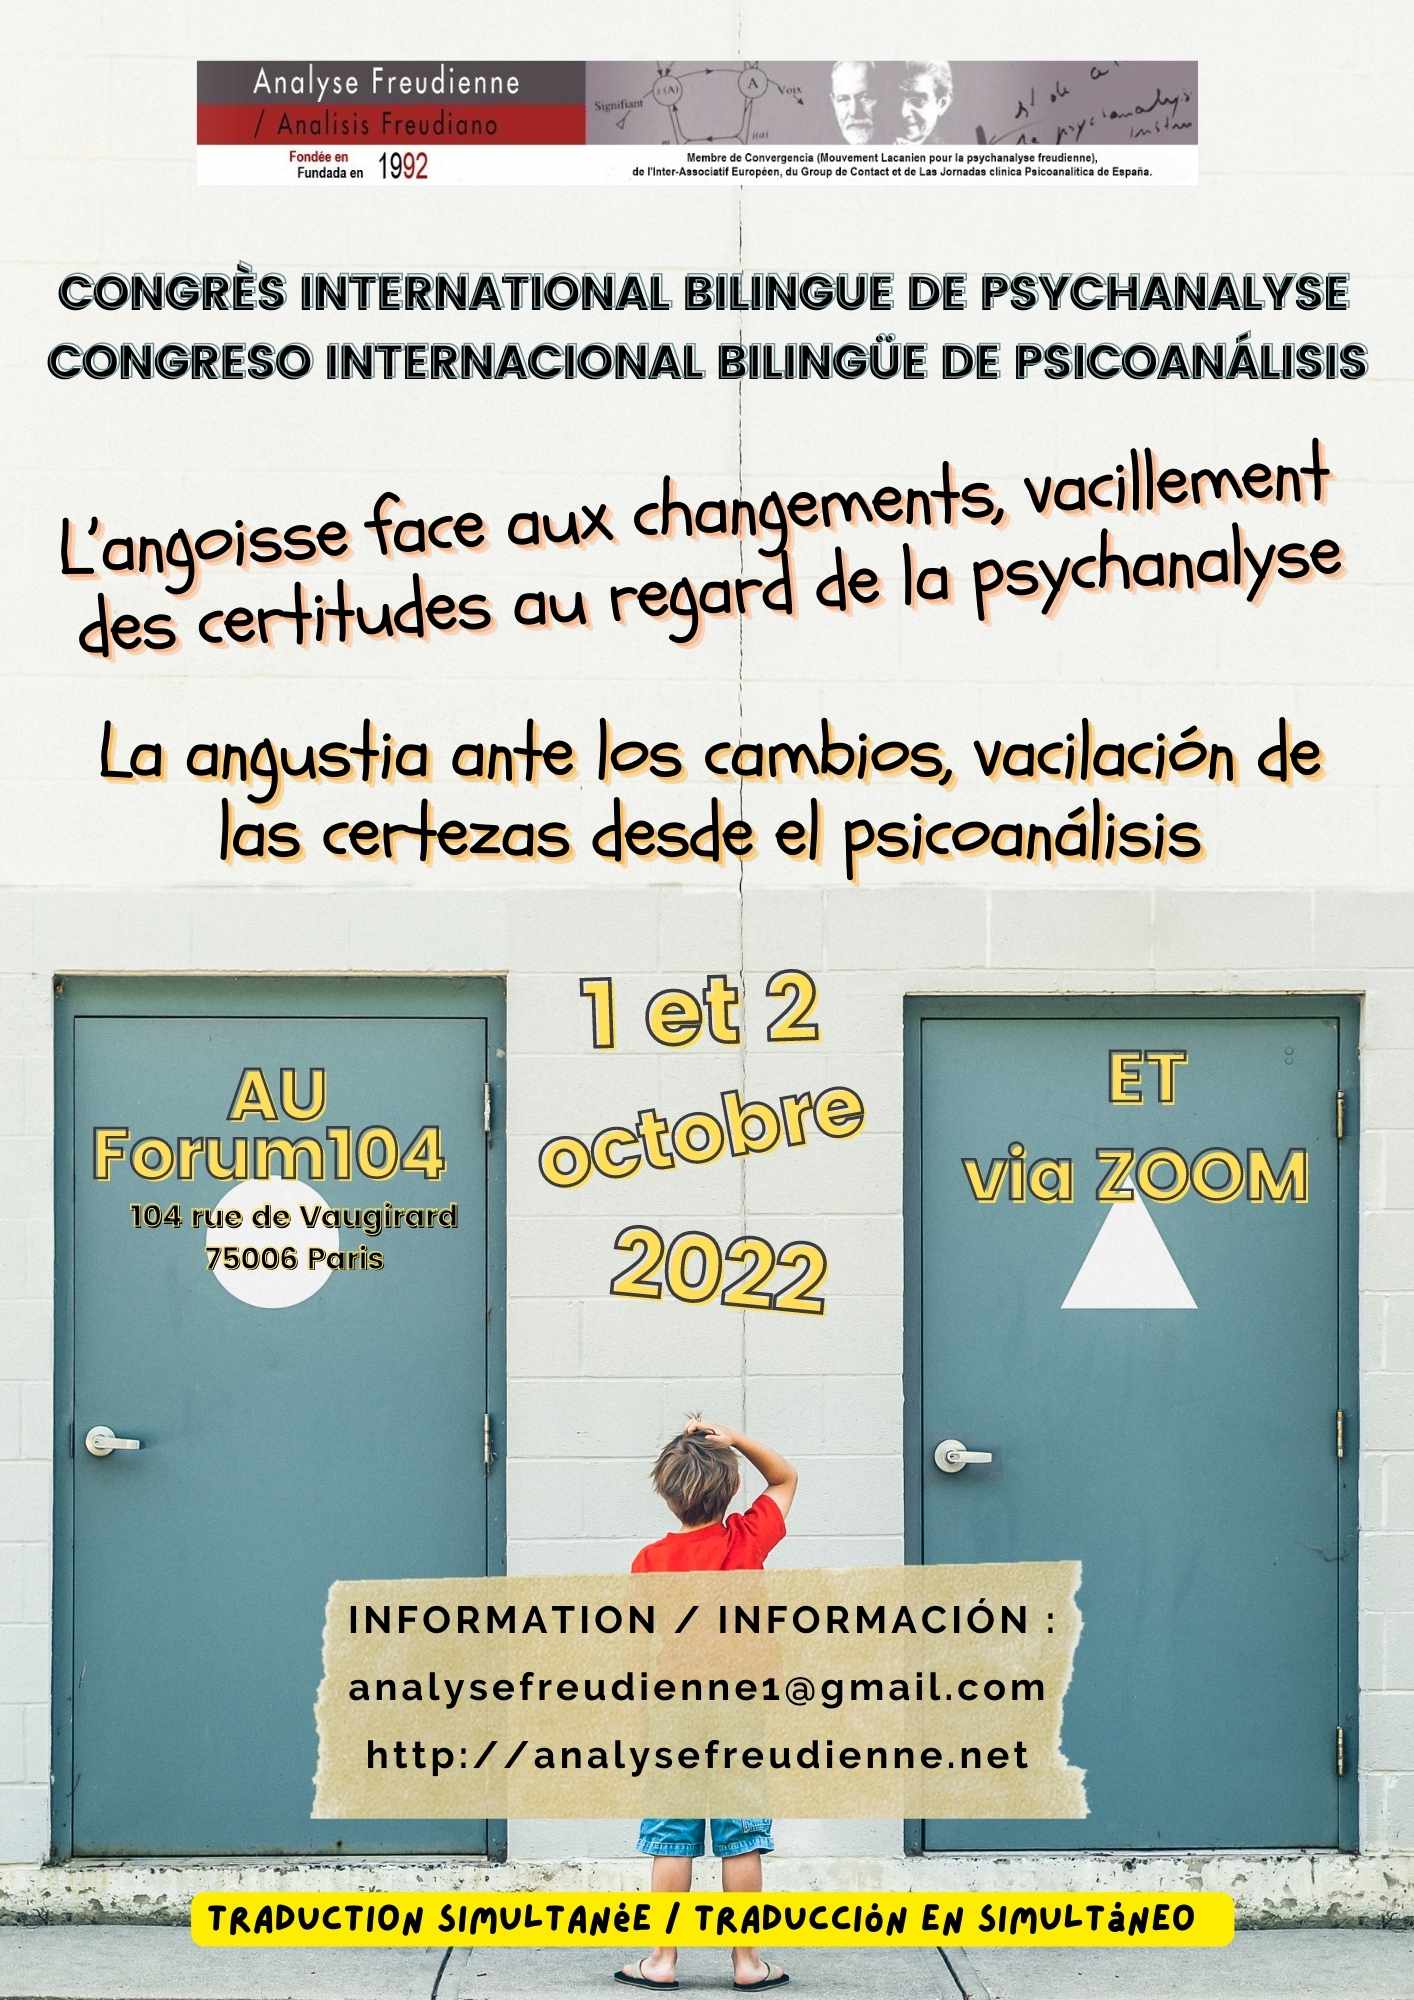 Paris Congrès International bilingue: “L’angoisse face aux changements, vacillement des certitudes au regard de la psychanalyse”1 et 2 octobre 2022